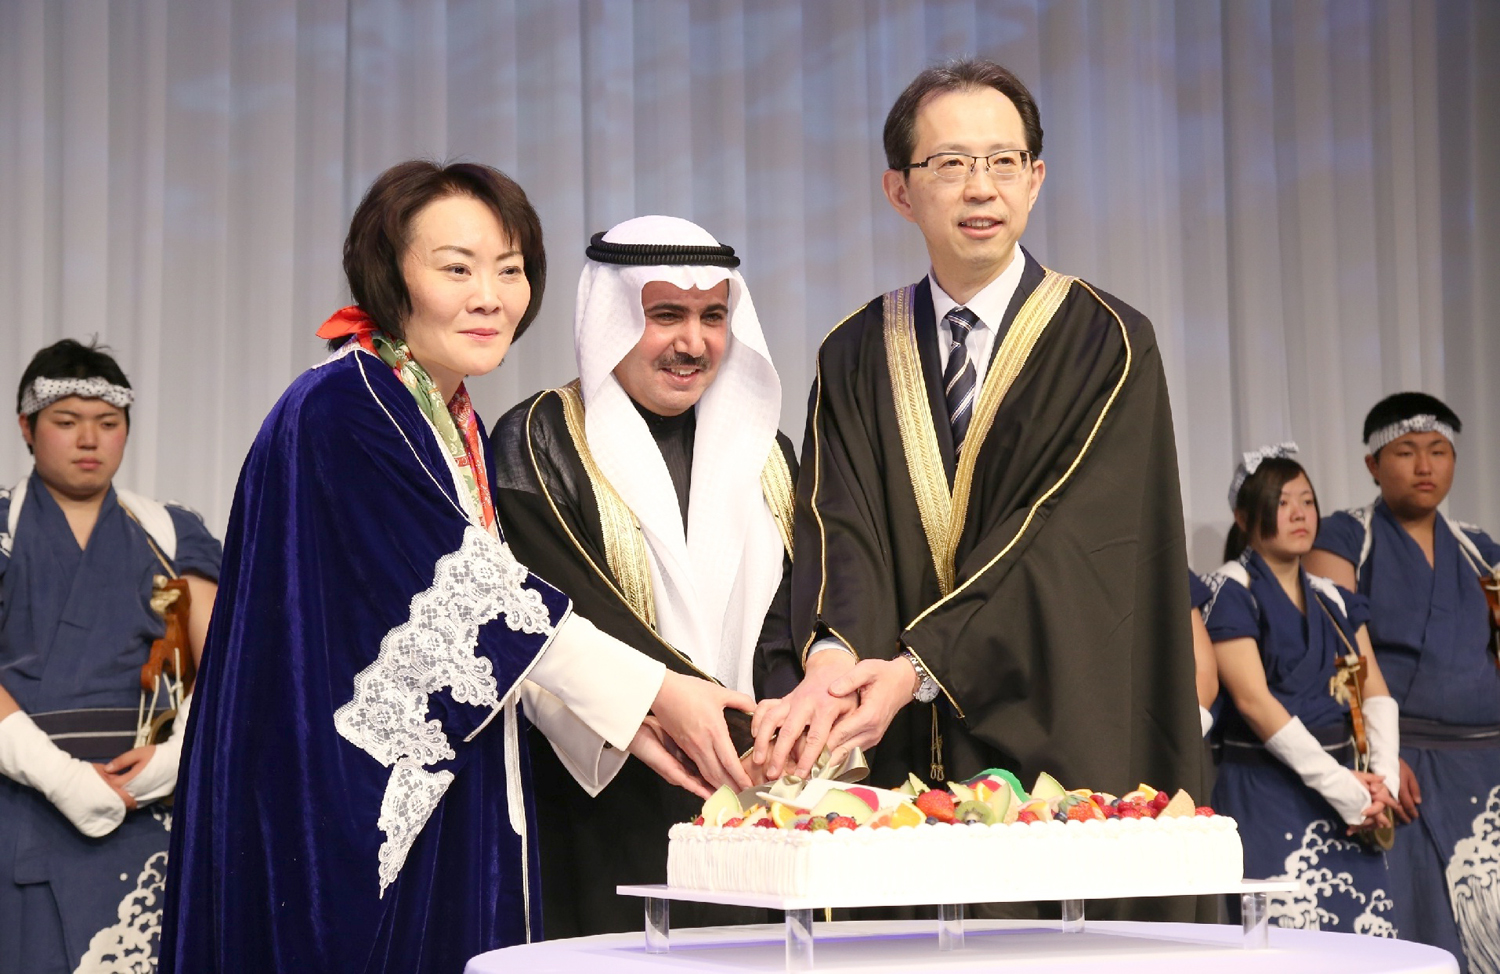 سفير دولة الكويت لدى اليابان عبدالرحمن العتيبي خلال الاحتفال بالأعياد الوطنية